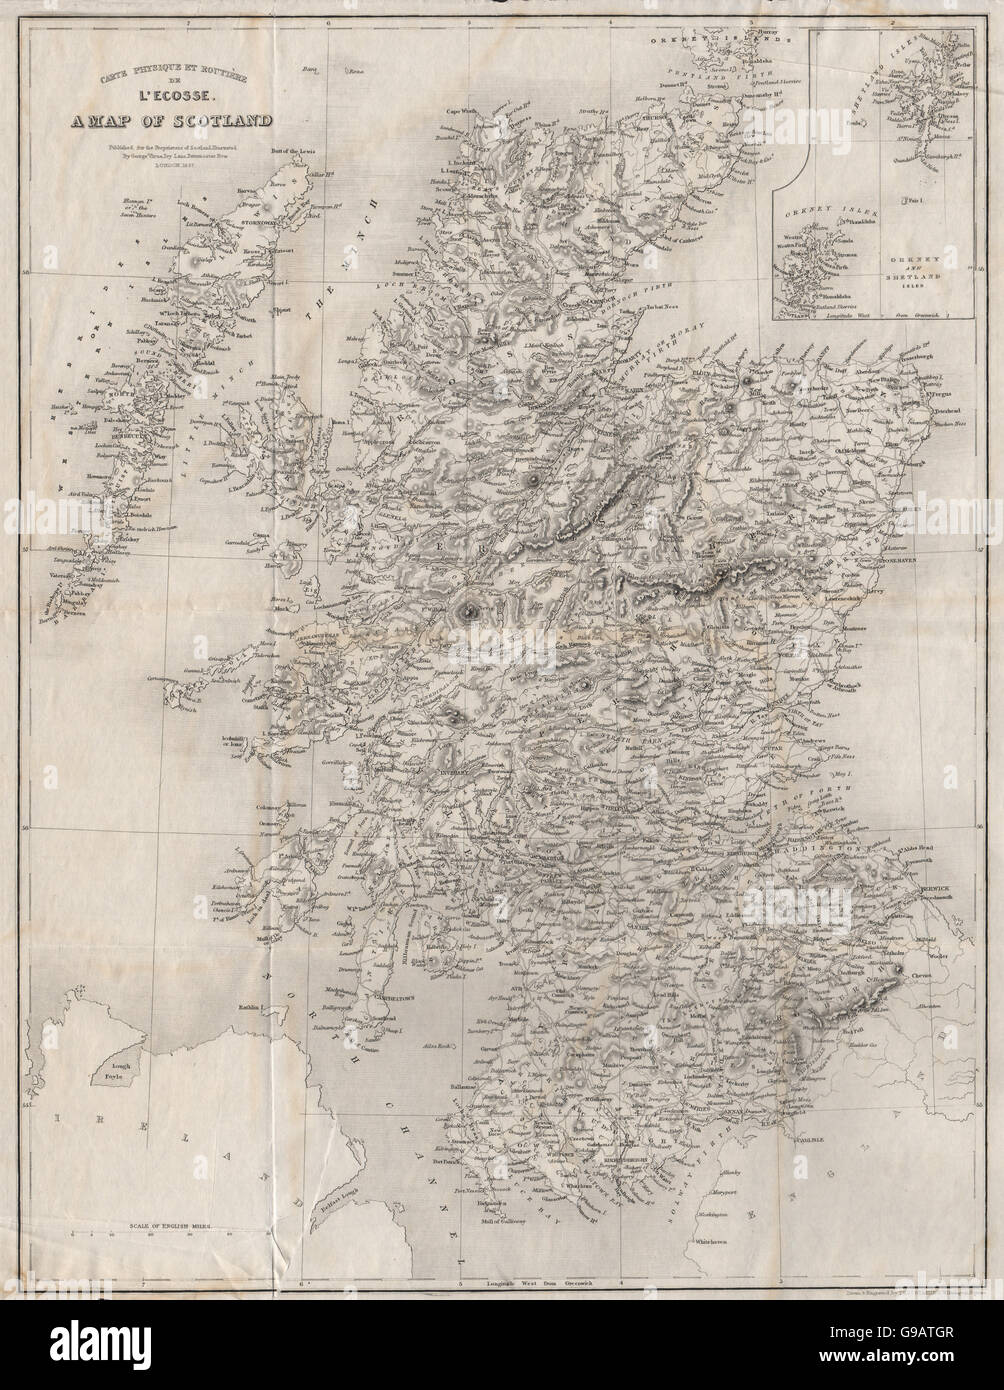 Carte Physique et Routière de l'Ecosse. A map of Scotland. STARLING, 1838 Stock Photo